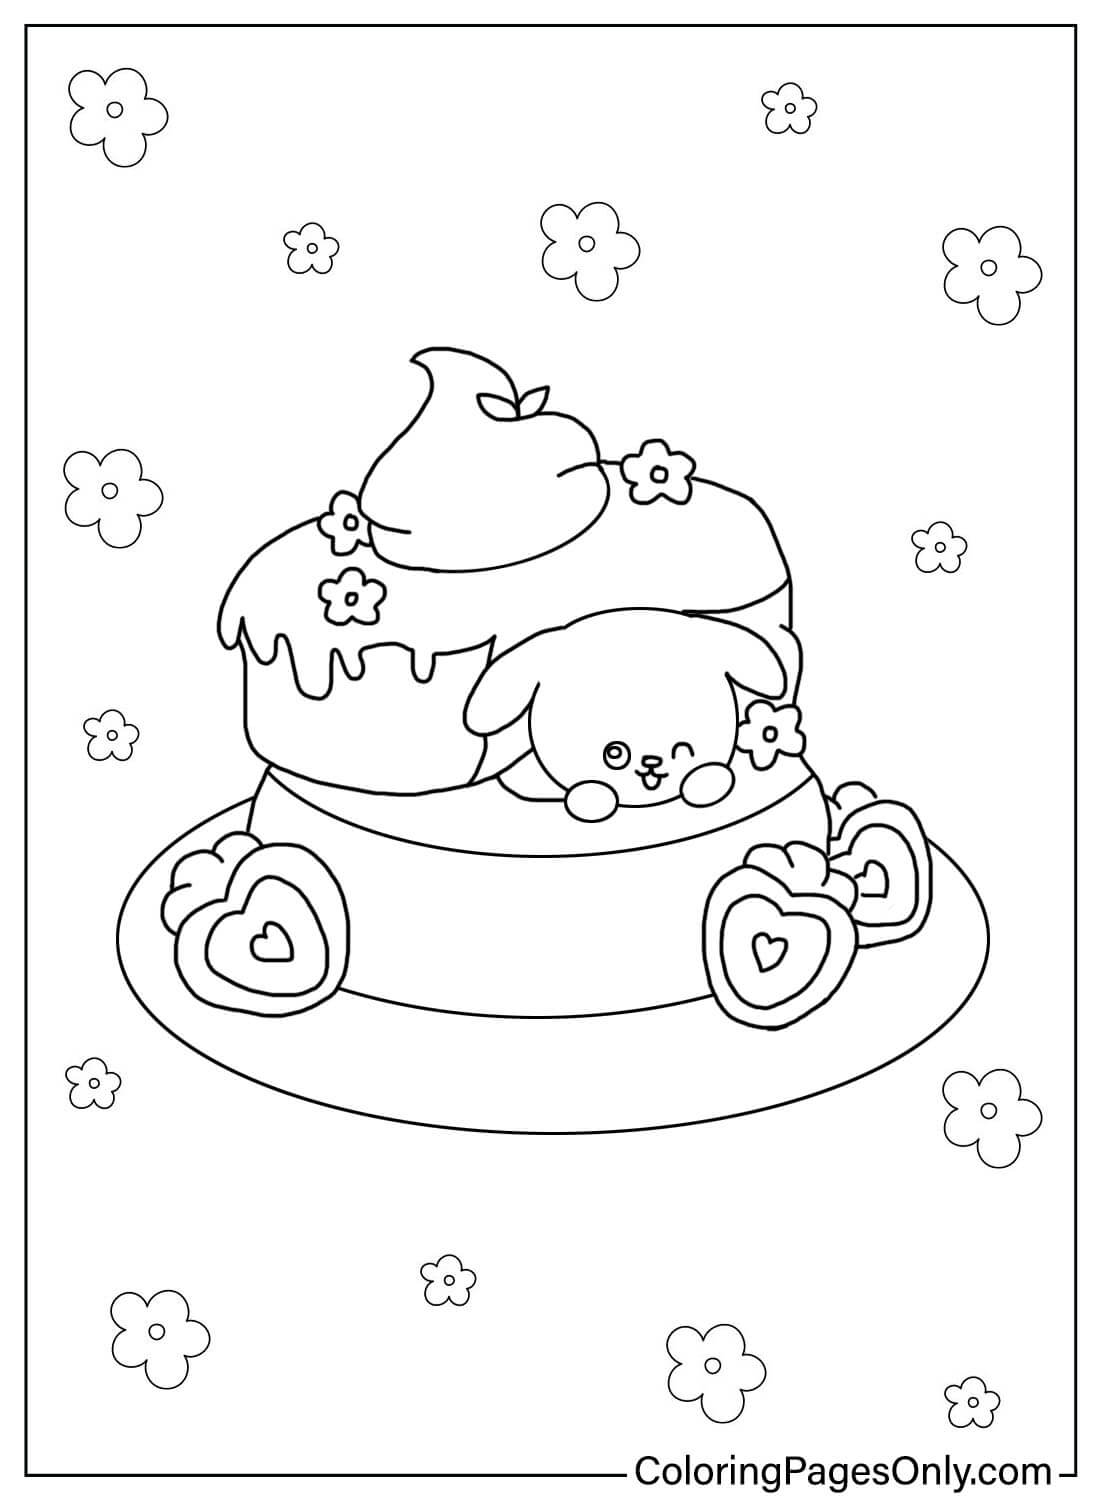 Páginas para colorear de pasteles imprimibles gratis para niños y adultos